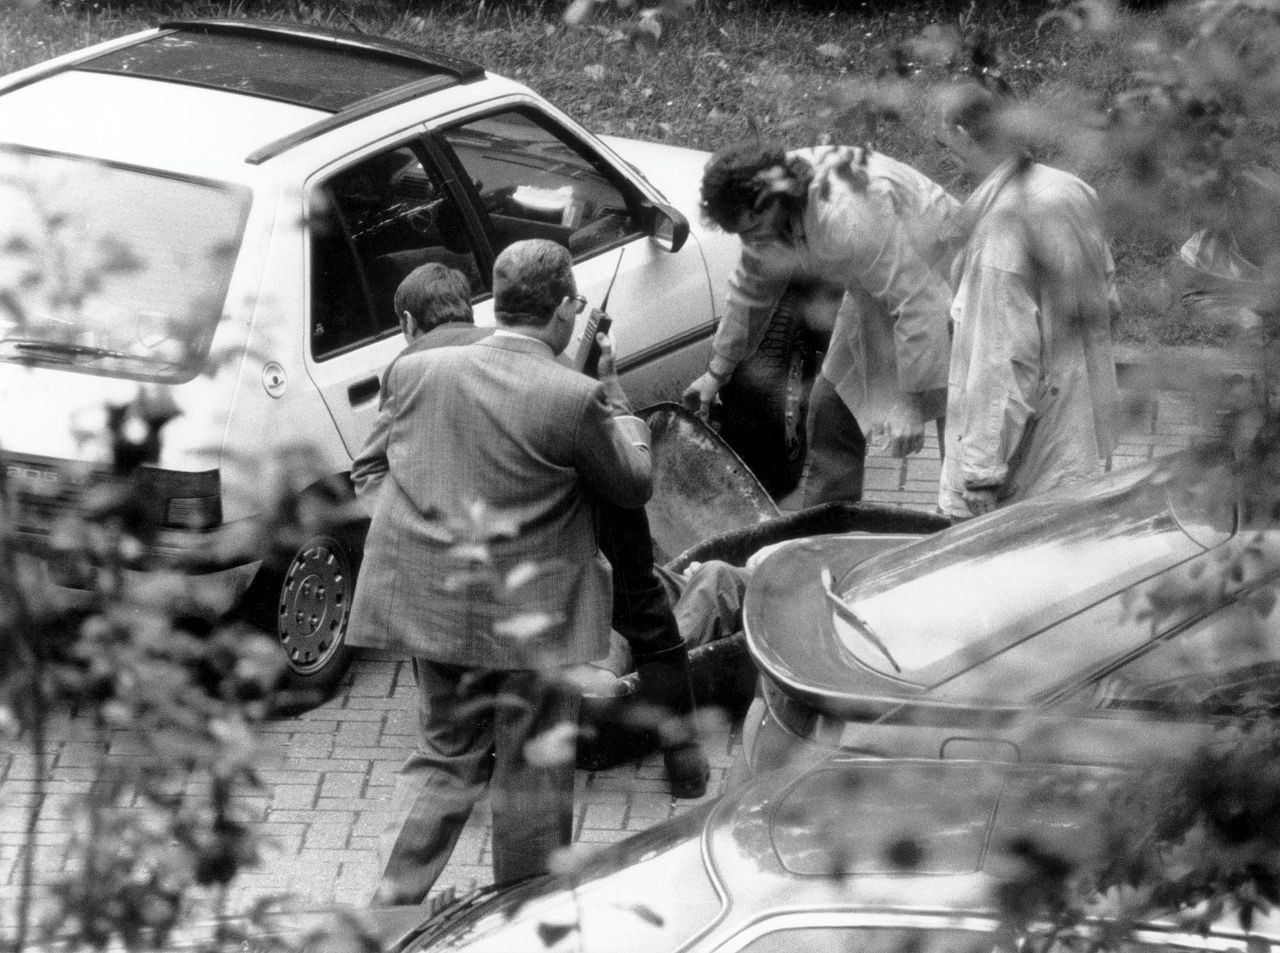 PS-kopstuk André Cools werd vermoord voor zijn huis in 1991.